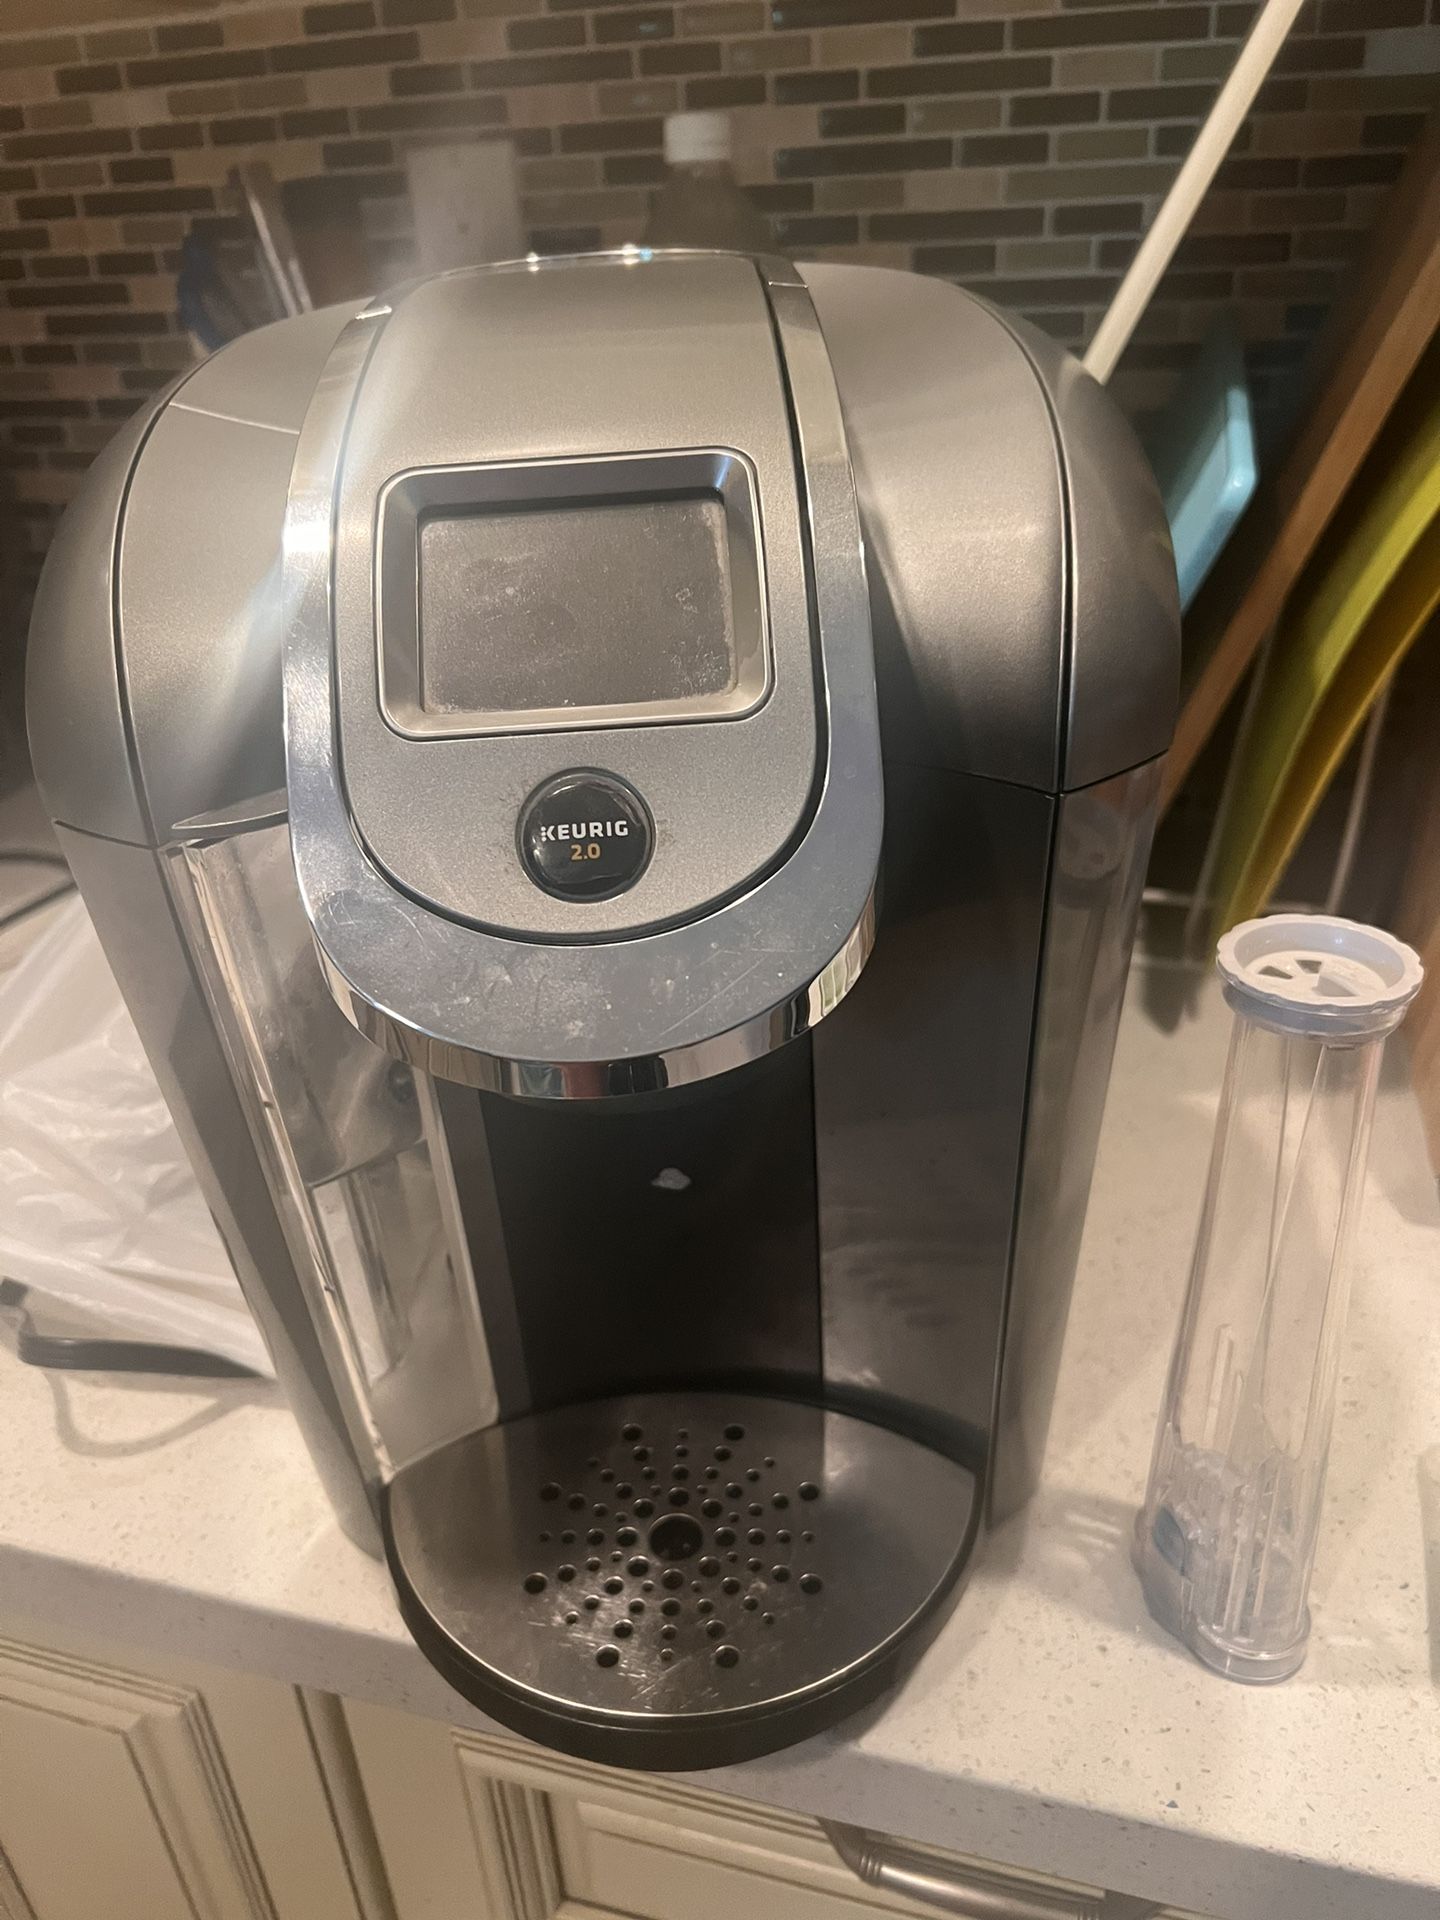 Keurig 2.0 K-cup coffee maker